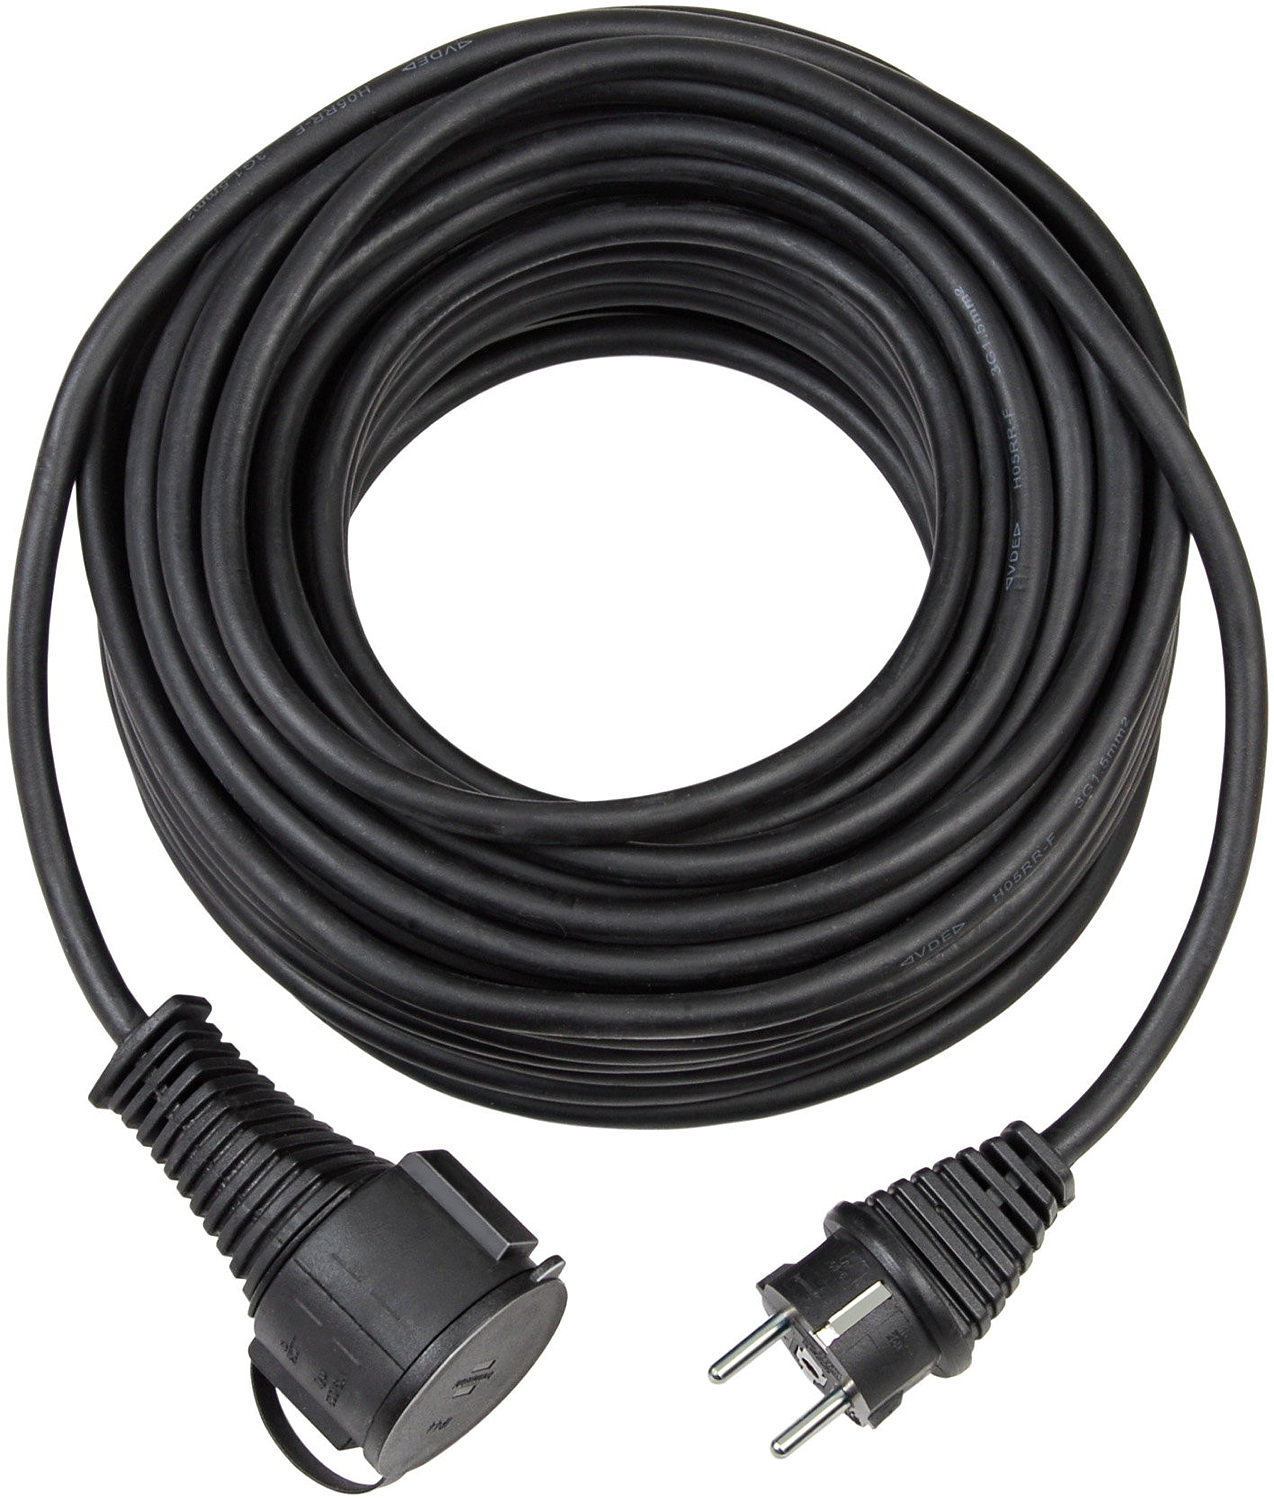 BREMAXX® Outdoor-Verlängerungskabel (25m Kabel in schwarz, für den kurzfristigen Einsatz im Außenbereich IP44, einsetzbar bis -35 ºC, öl- und UV-beständig)